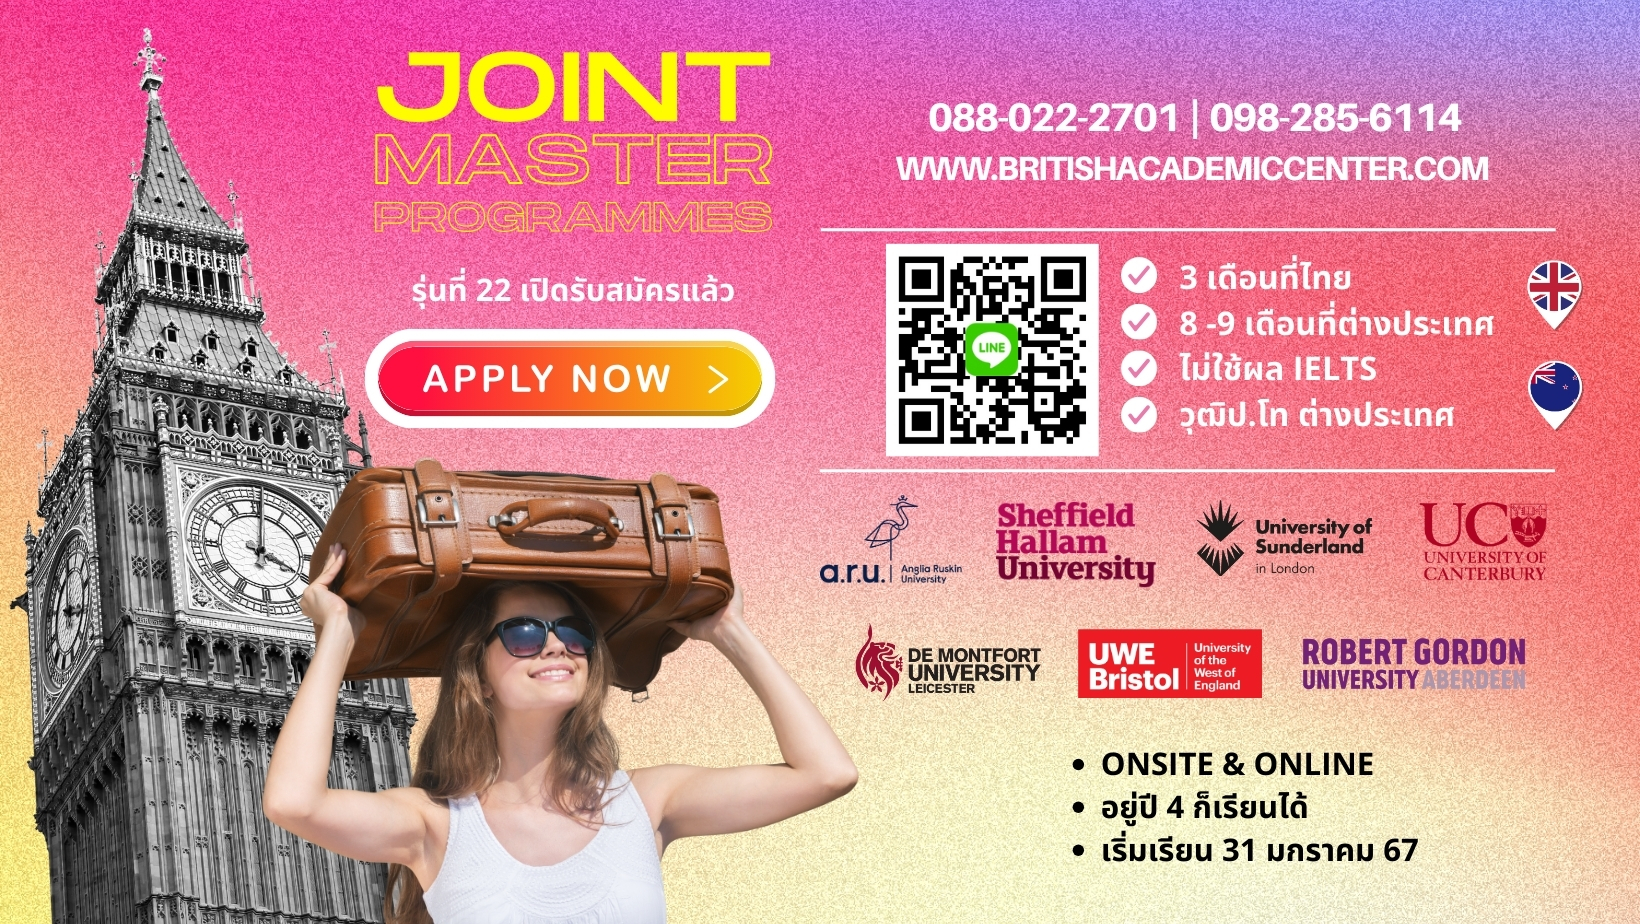 เรียนต่อต่างประเทศกับ Joint Master Programmes เปิดรับสมัครแล้ว รุ่นที่22